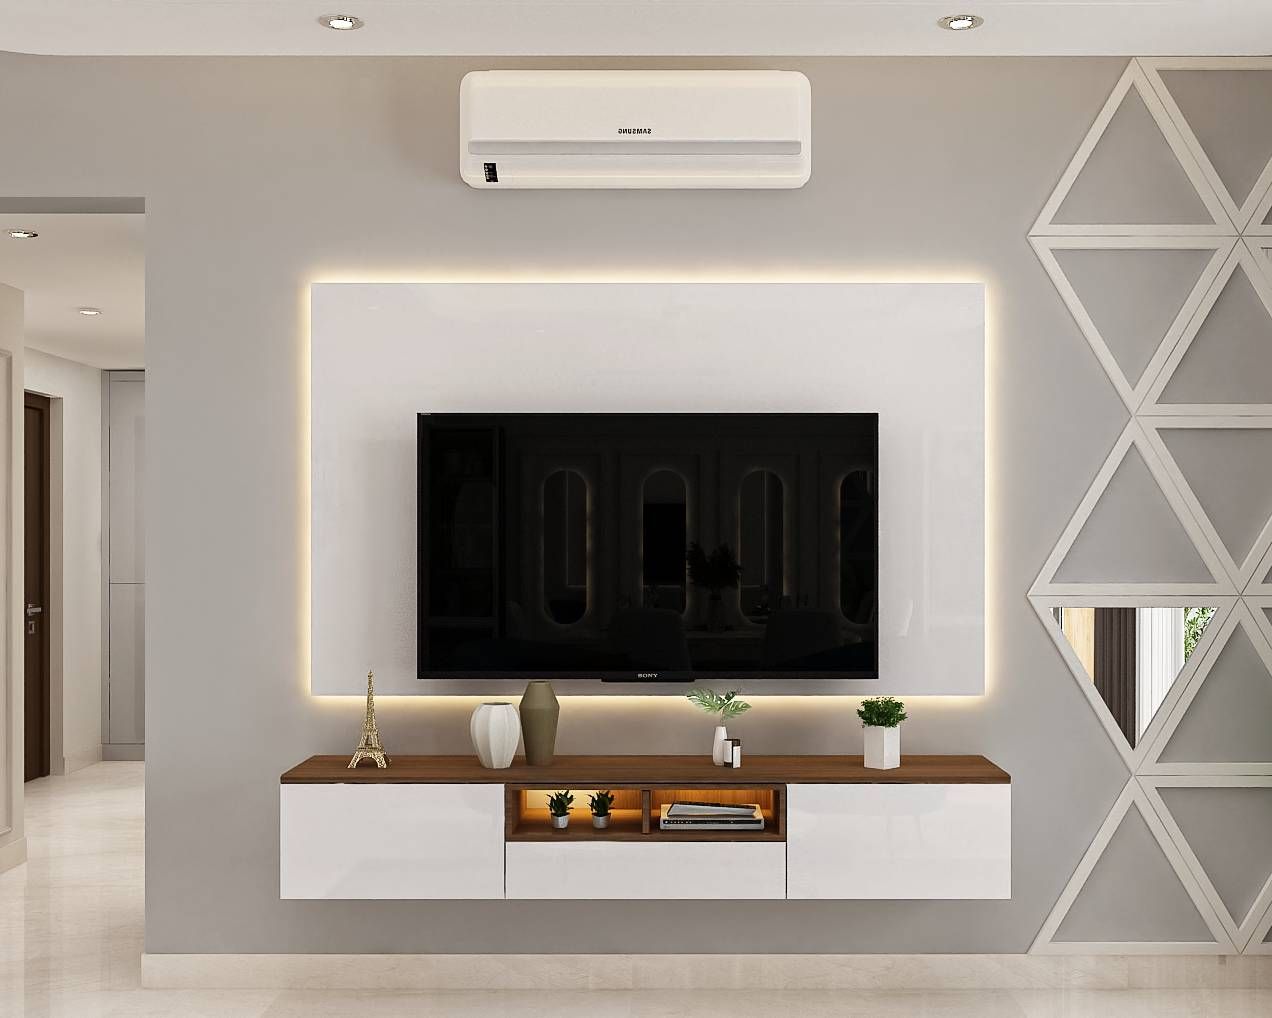 Spacious TV Unit With Minimalist Interior Design | Livspace